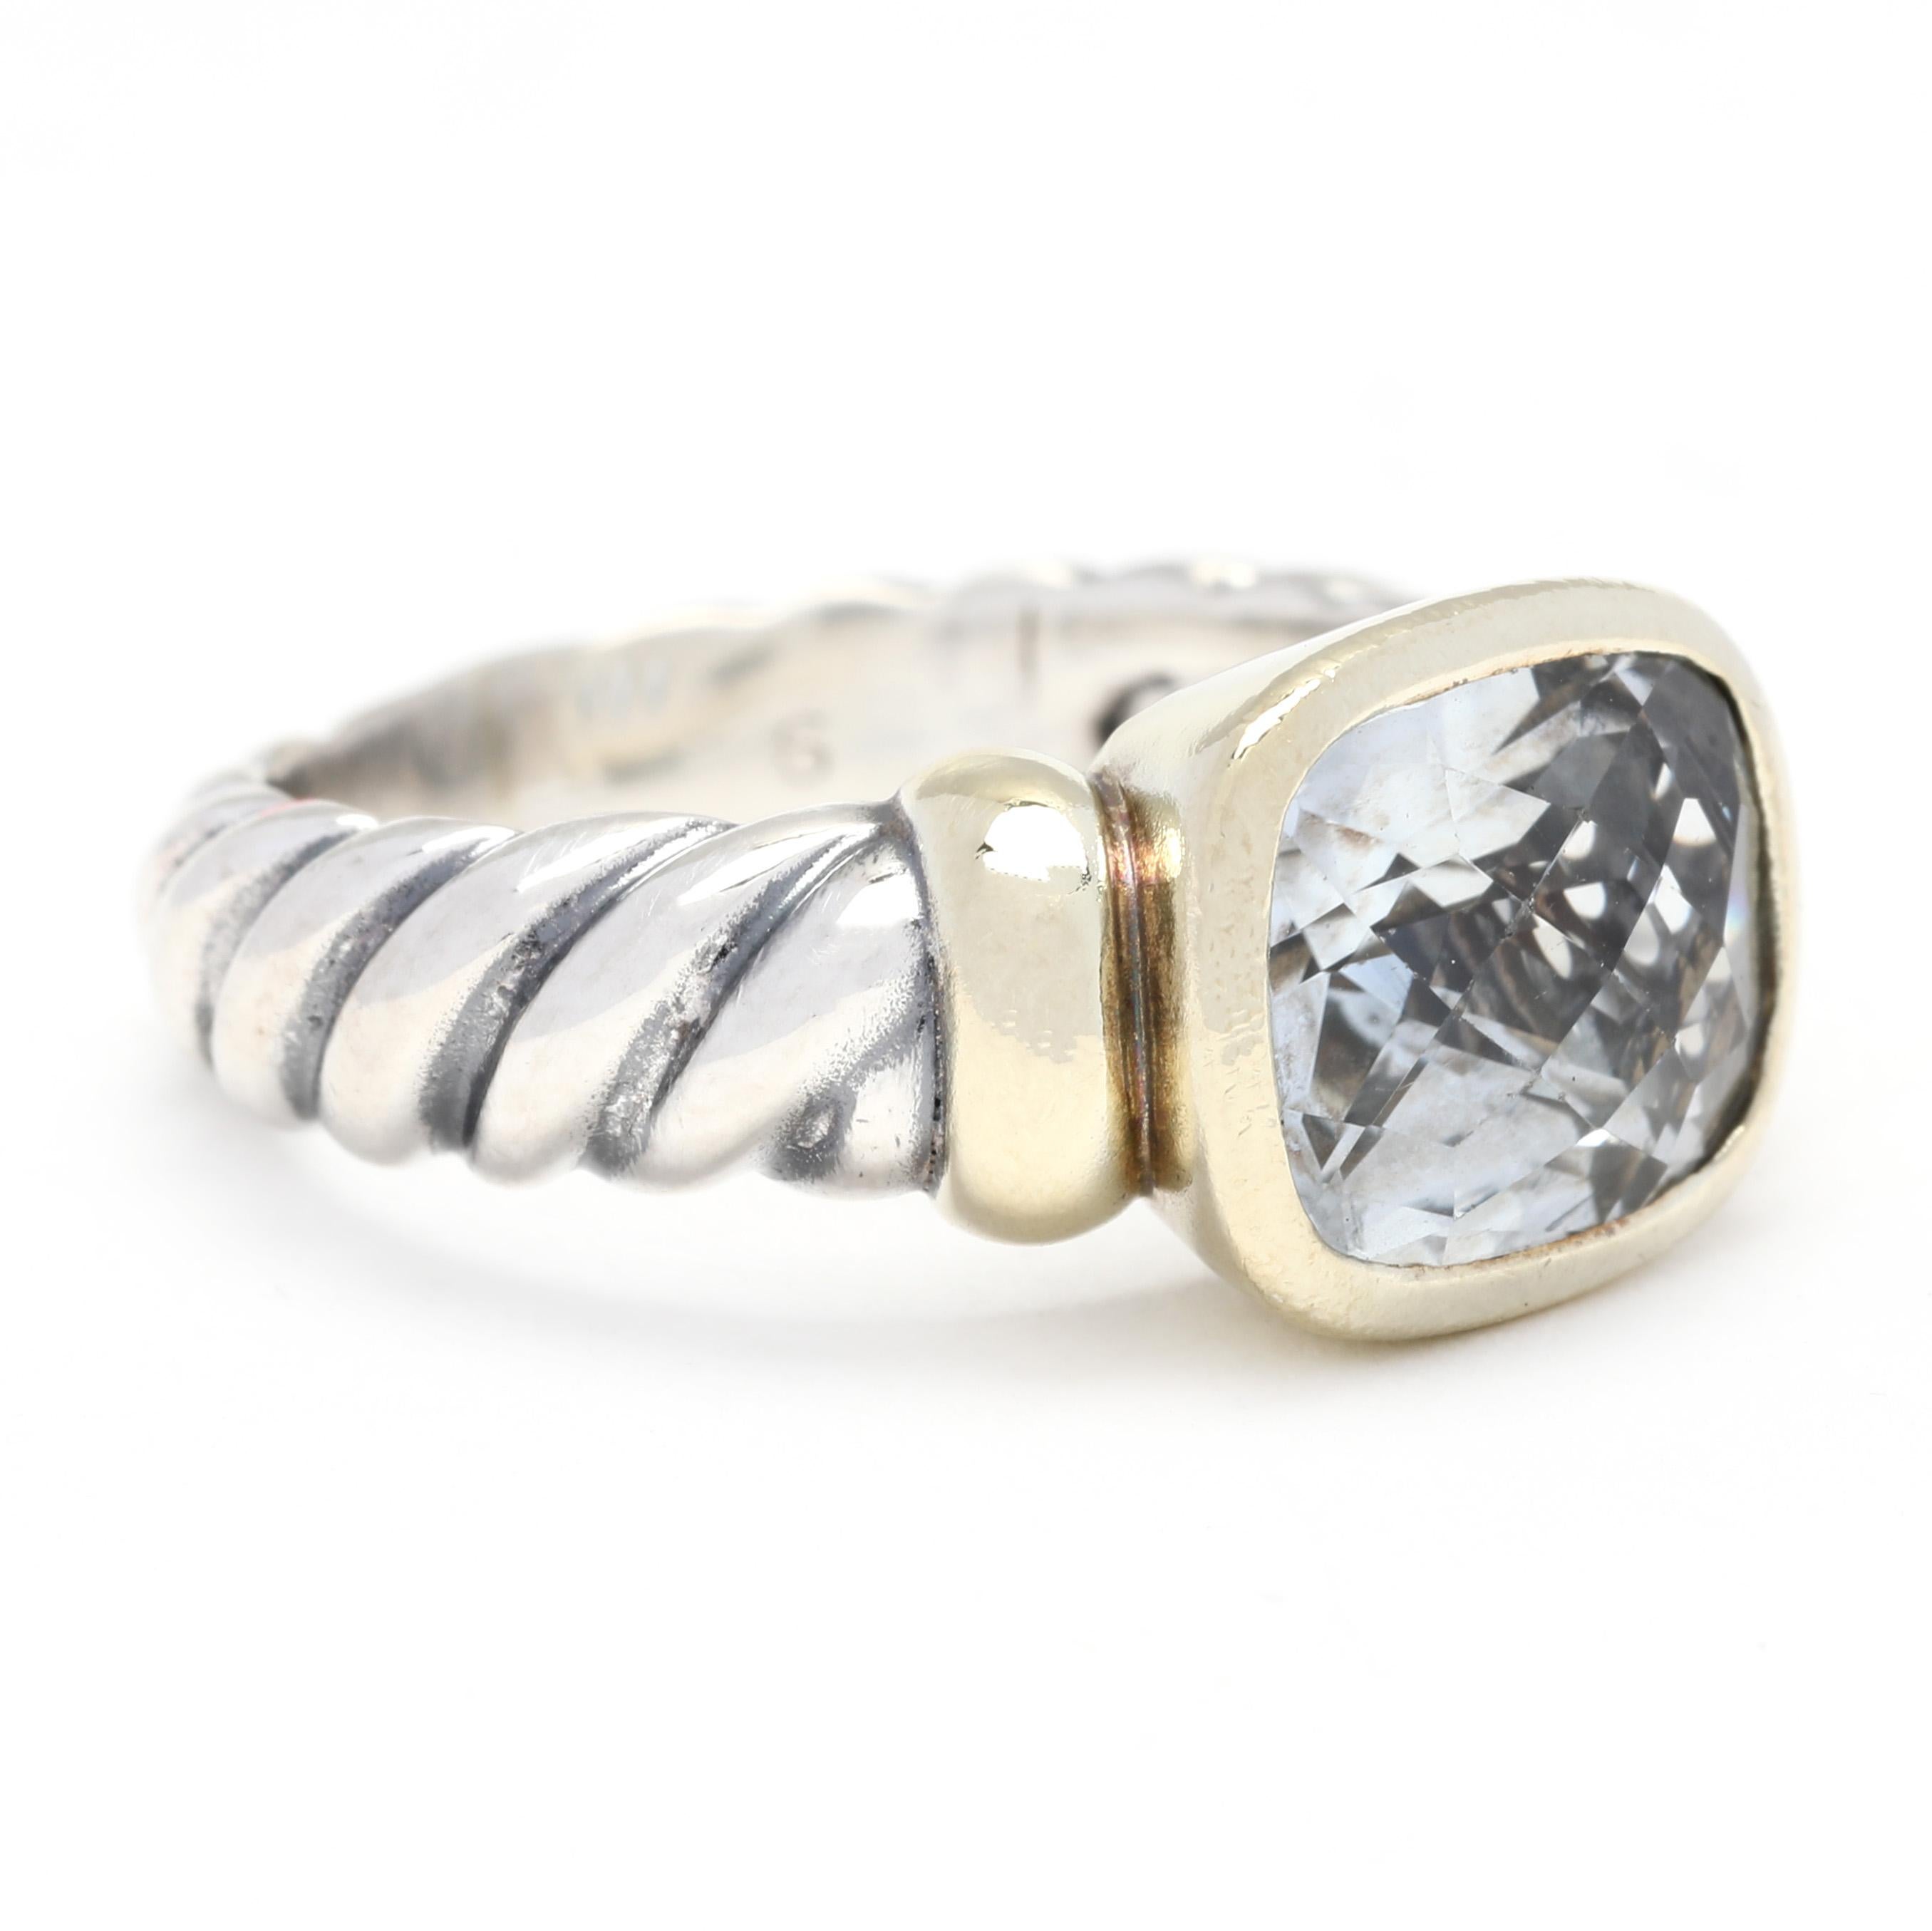 Este impresionante anillo David Yurman Noblesse Prasiolite está elaborado en oro amarillo de 14 quilates, plata de ley y prasiolita (amatista verde). El anillo presenta una delicada envoltura de cable de plata de ley que envuelve el centro de